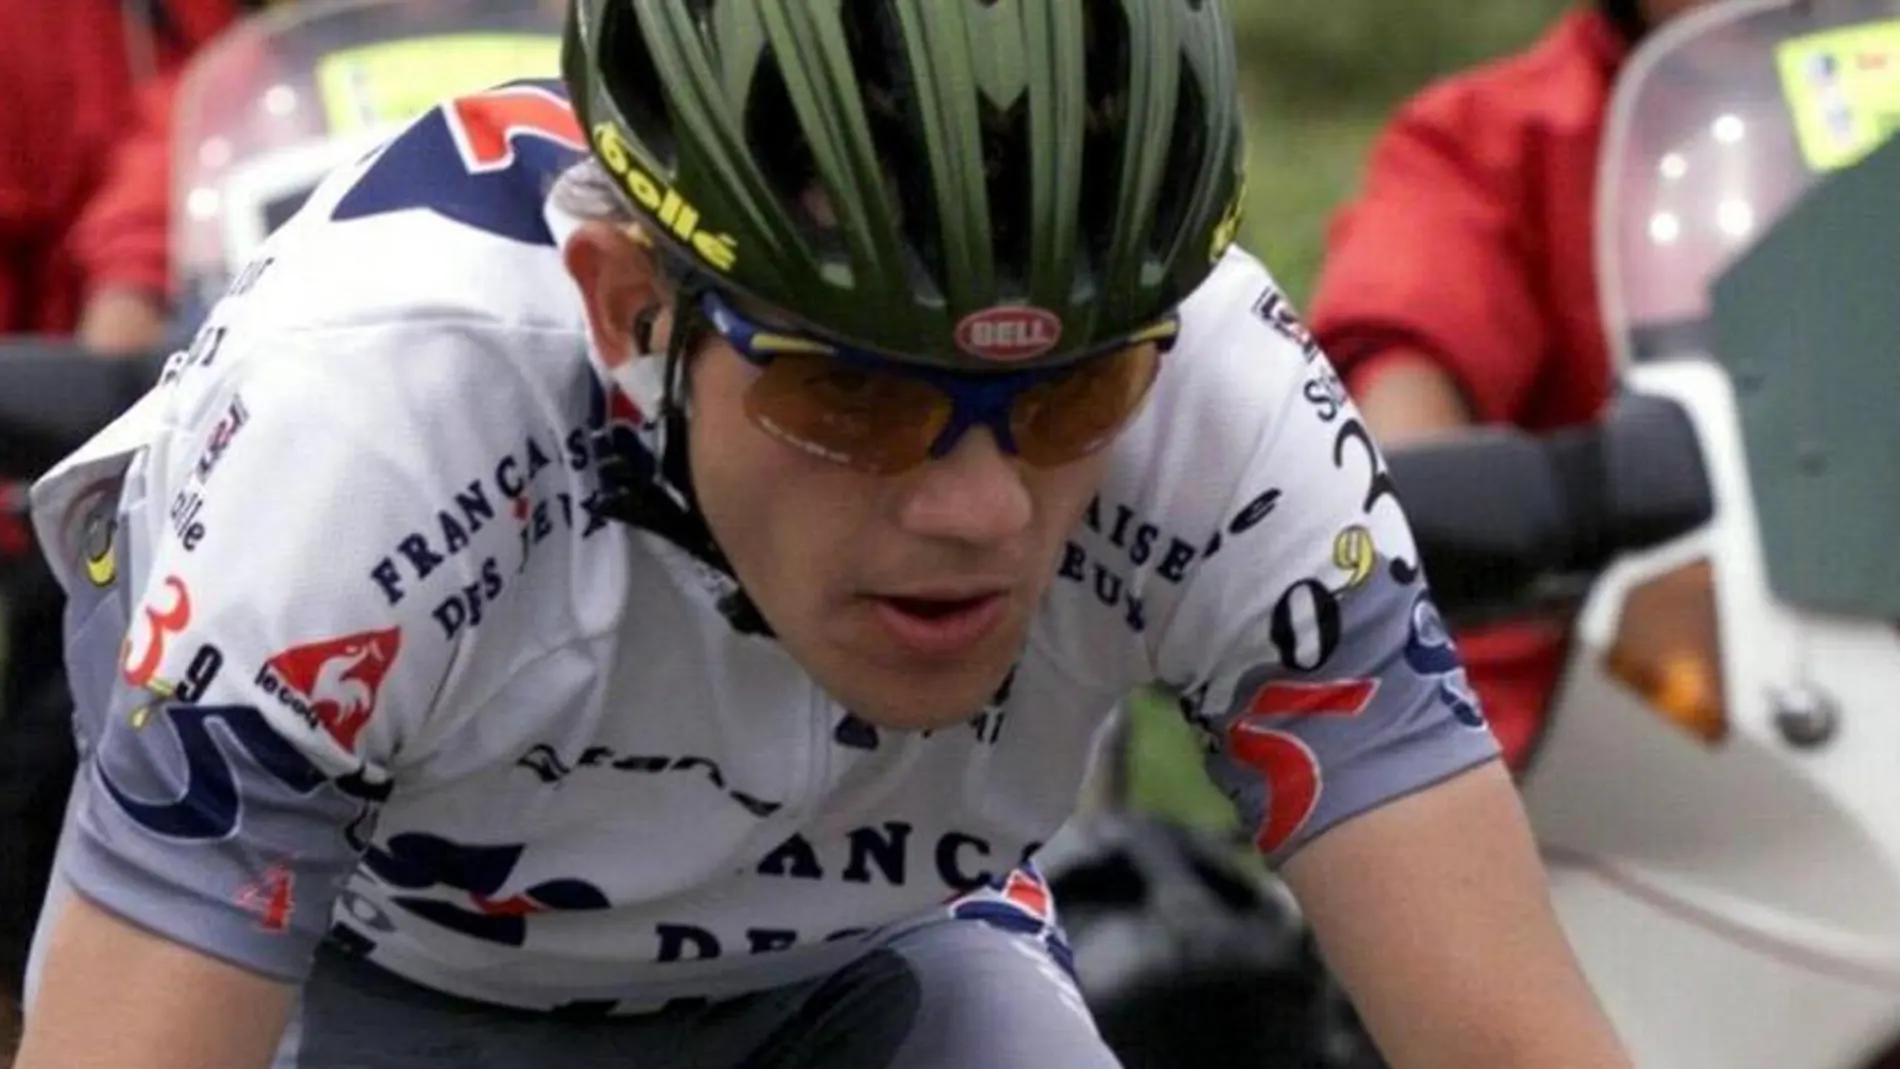 Christophe Bassons, ciclista la época de Lance Armstrong: "Me a ofrecer 40.000 euros al mes si me dopaba con